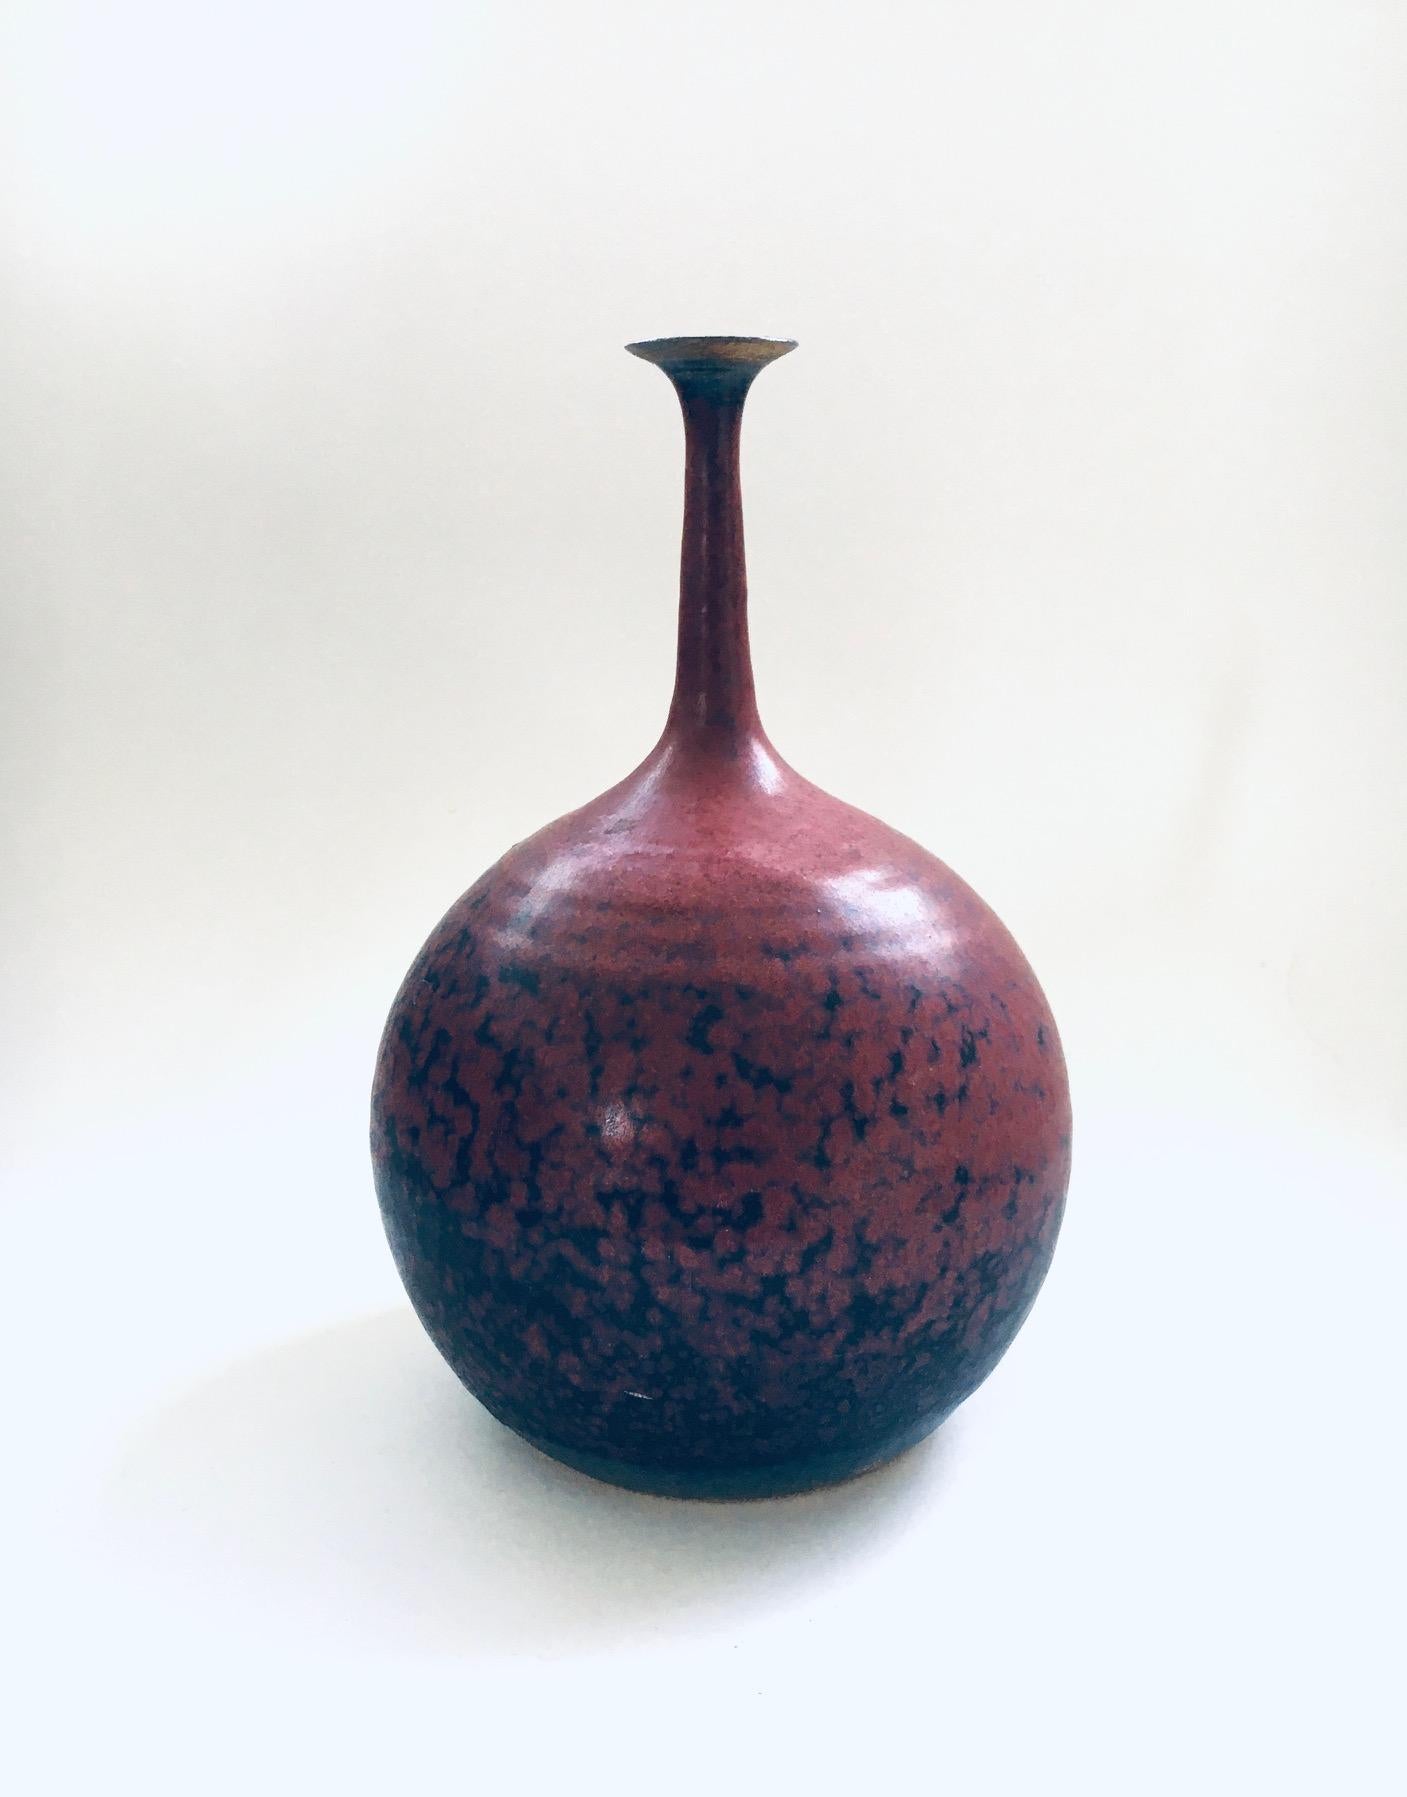 Vintage Art Pottery Studio Ausgussvase von Gubbels Helden. Hergestellt in den Niederlanden in den 1970er/80er Jahren. Kugelförmige Vase mit feinem Ausguss in bordeauxroter und blauer Glasur. Auf der Unterseite gestempelt. Dies kommt in sehr gutem